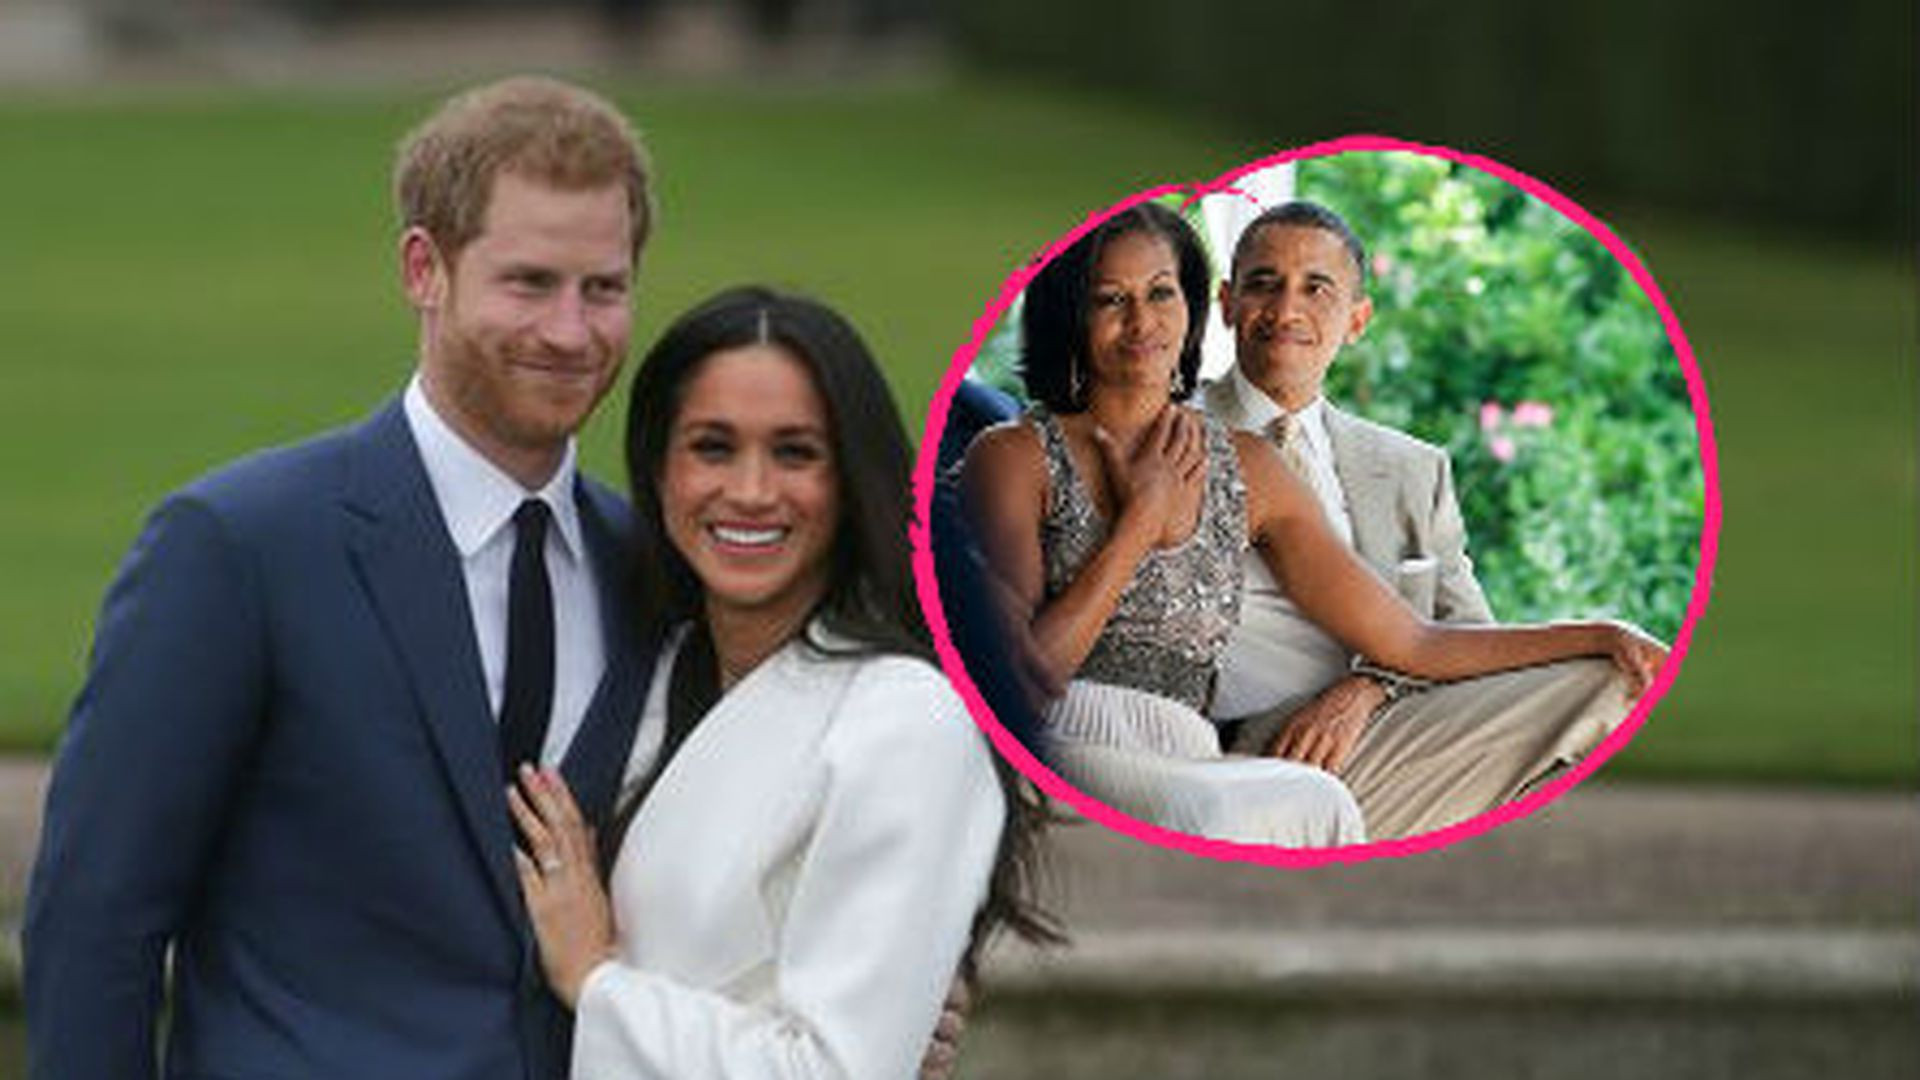 Bilder Hochzeit Prinz Harry
 Hochzeit von Prinz Harry & Meghan Die Obamas sollen